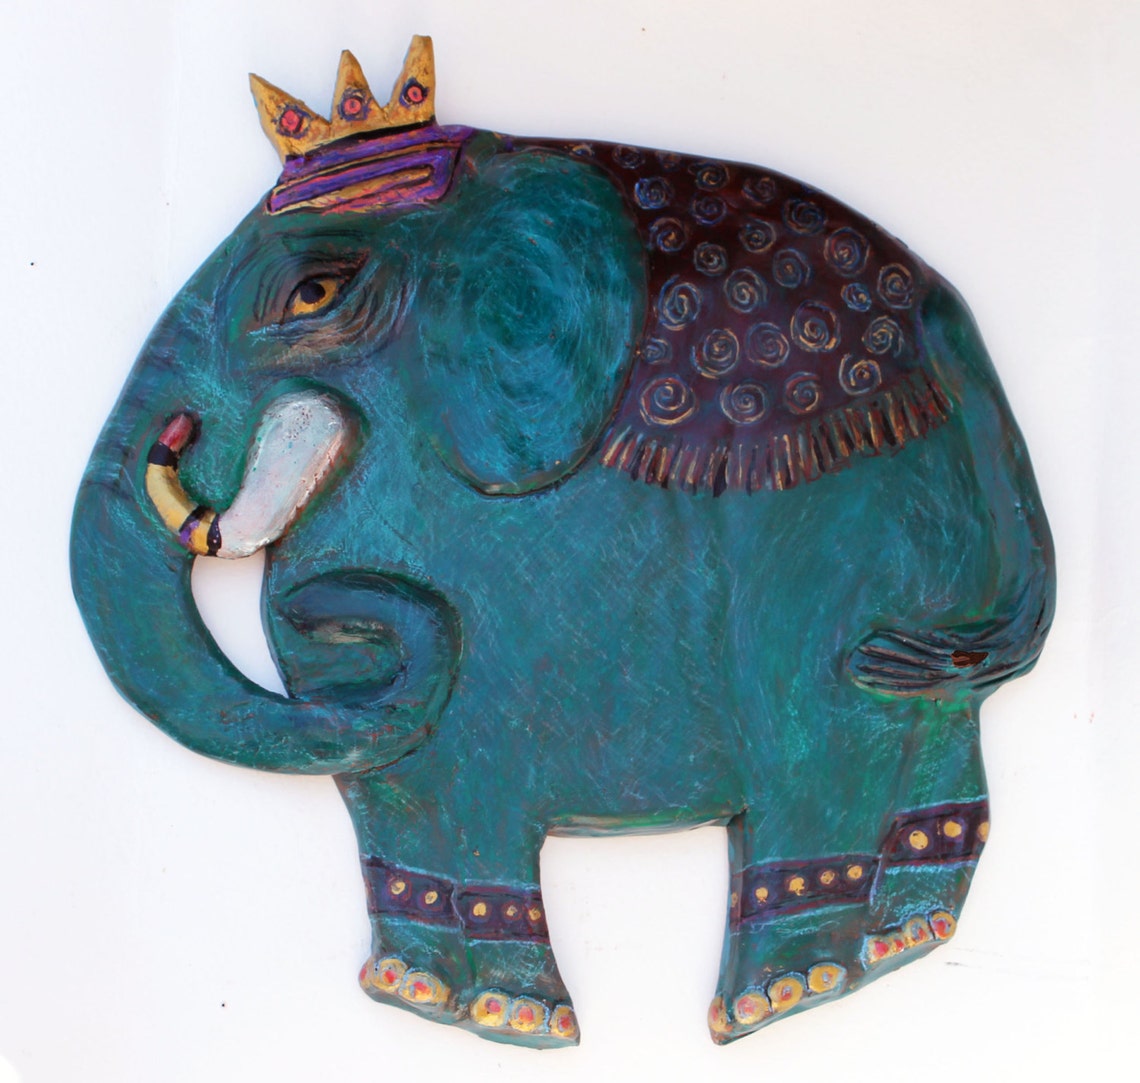 Kandula the Elephant Ceramic Wall Decor - Etsy